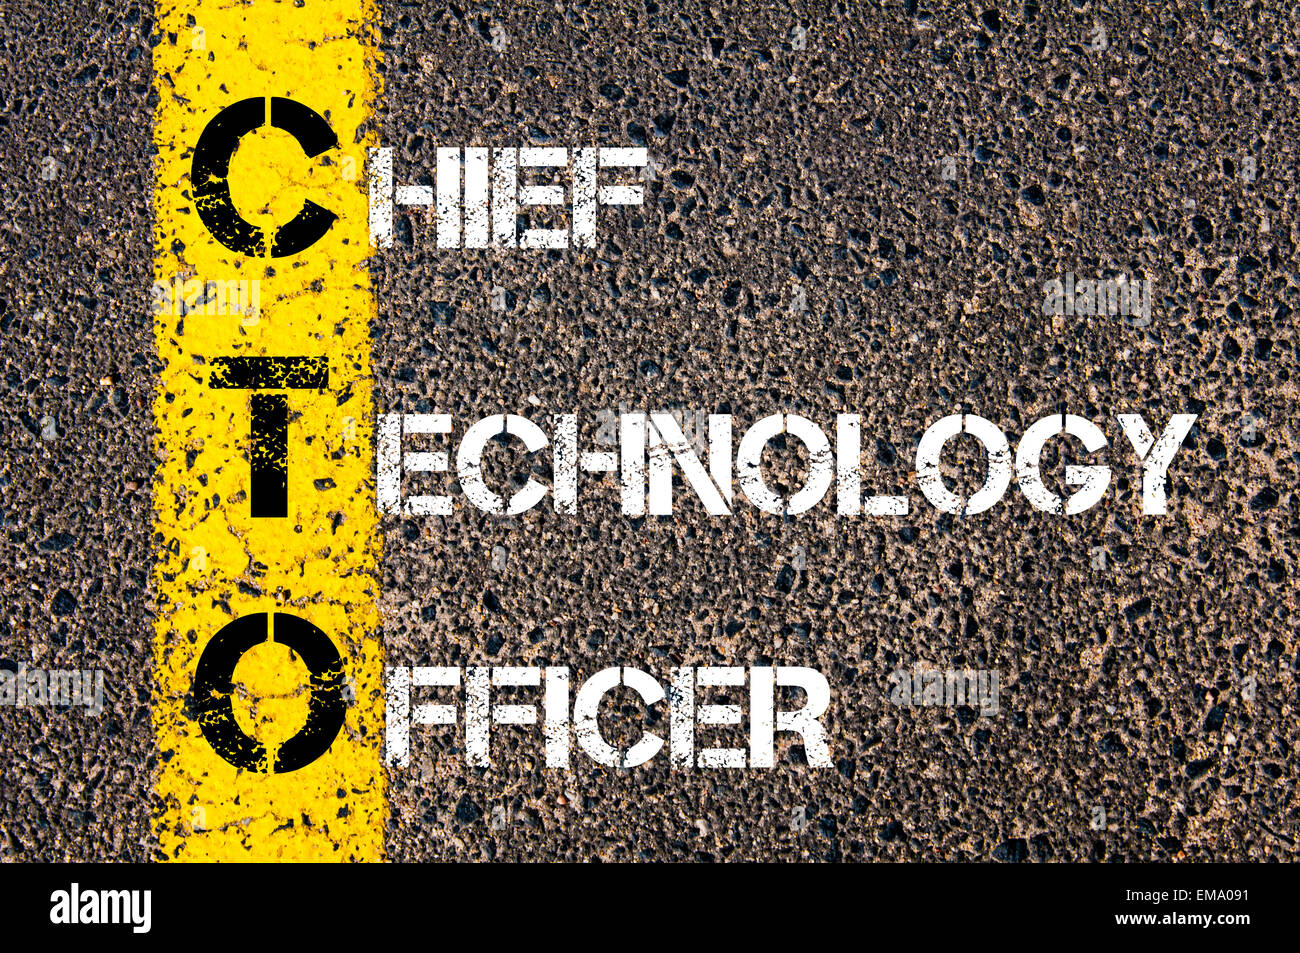 Geschäft Abkürzung CTO – Chief Technology Officer. Gelbe Farbenlinie auf  der Straße gegen Asphalt Hintergrund. Konzeptbild Stockfotografie - Alamy